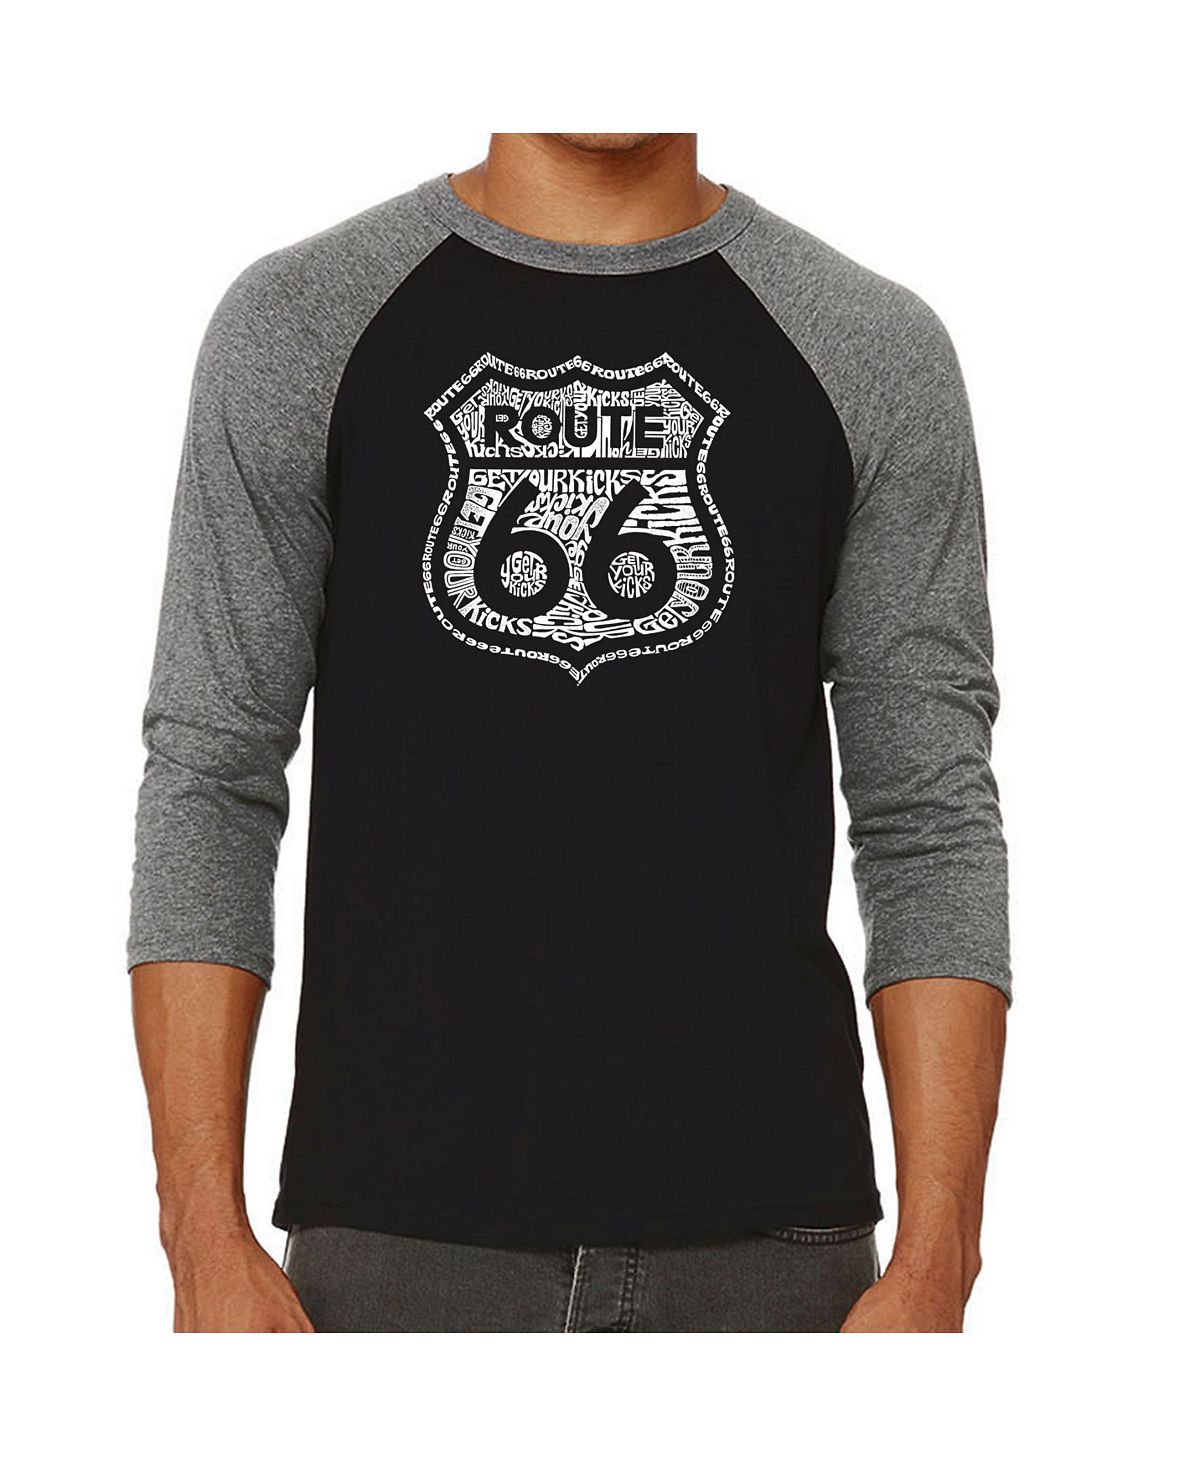 Мужская футболка с надписью get your kicks on route 66 реглан с надписями LA Pop Art, серый